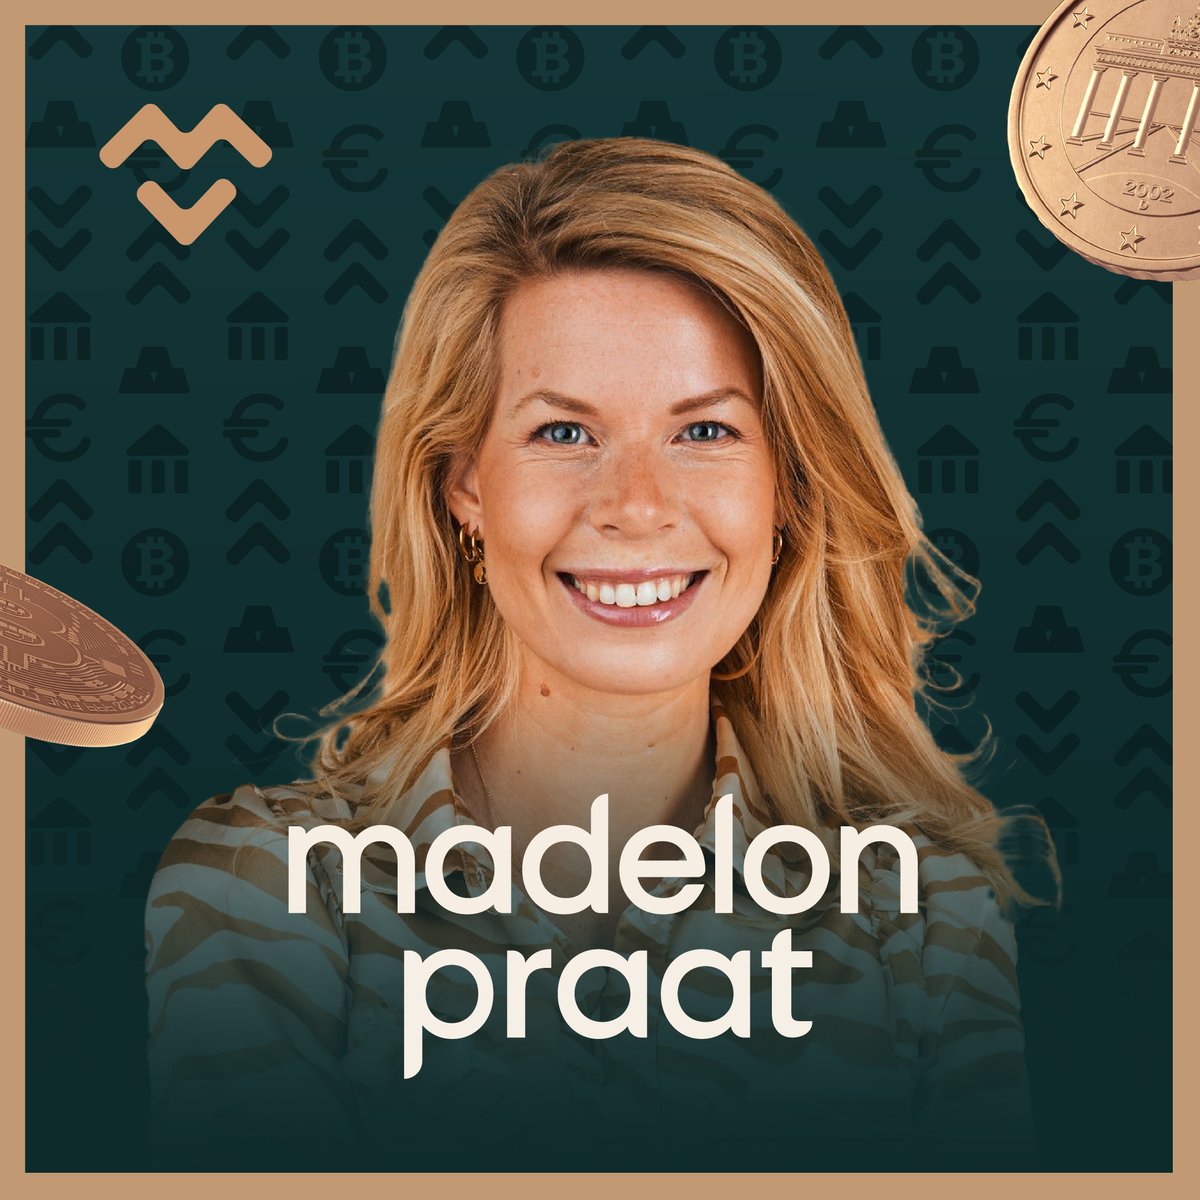 Op veler verzoek: Madelon Praat is nu ook te beluisteren via Spotify als audiopodcast of videopodcast. Vind de link in de reacties hieronder 👇🏼